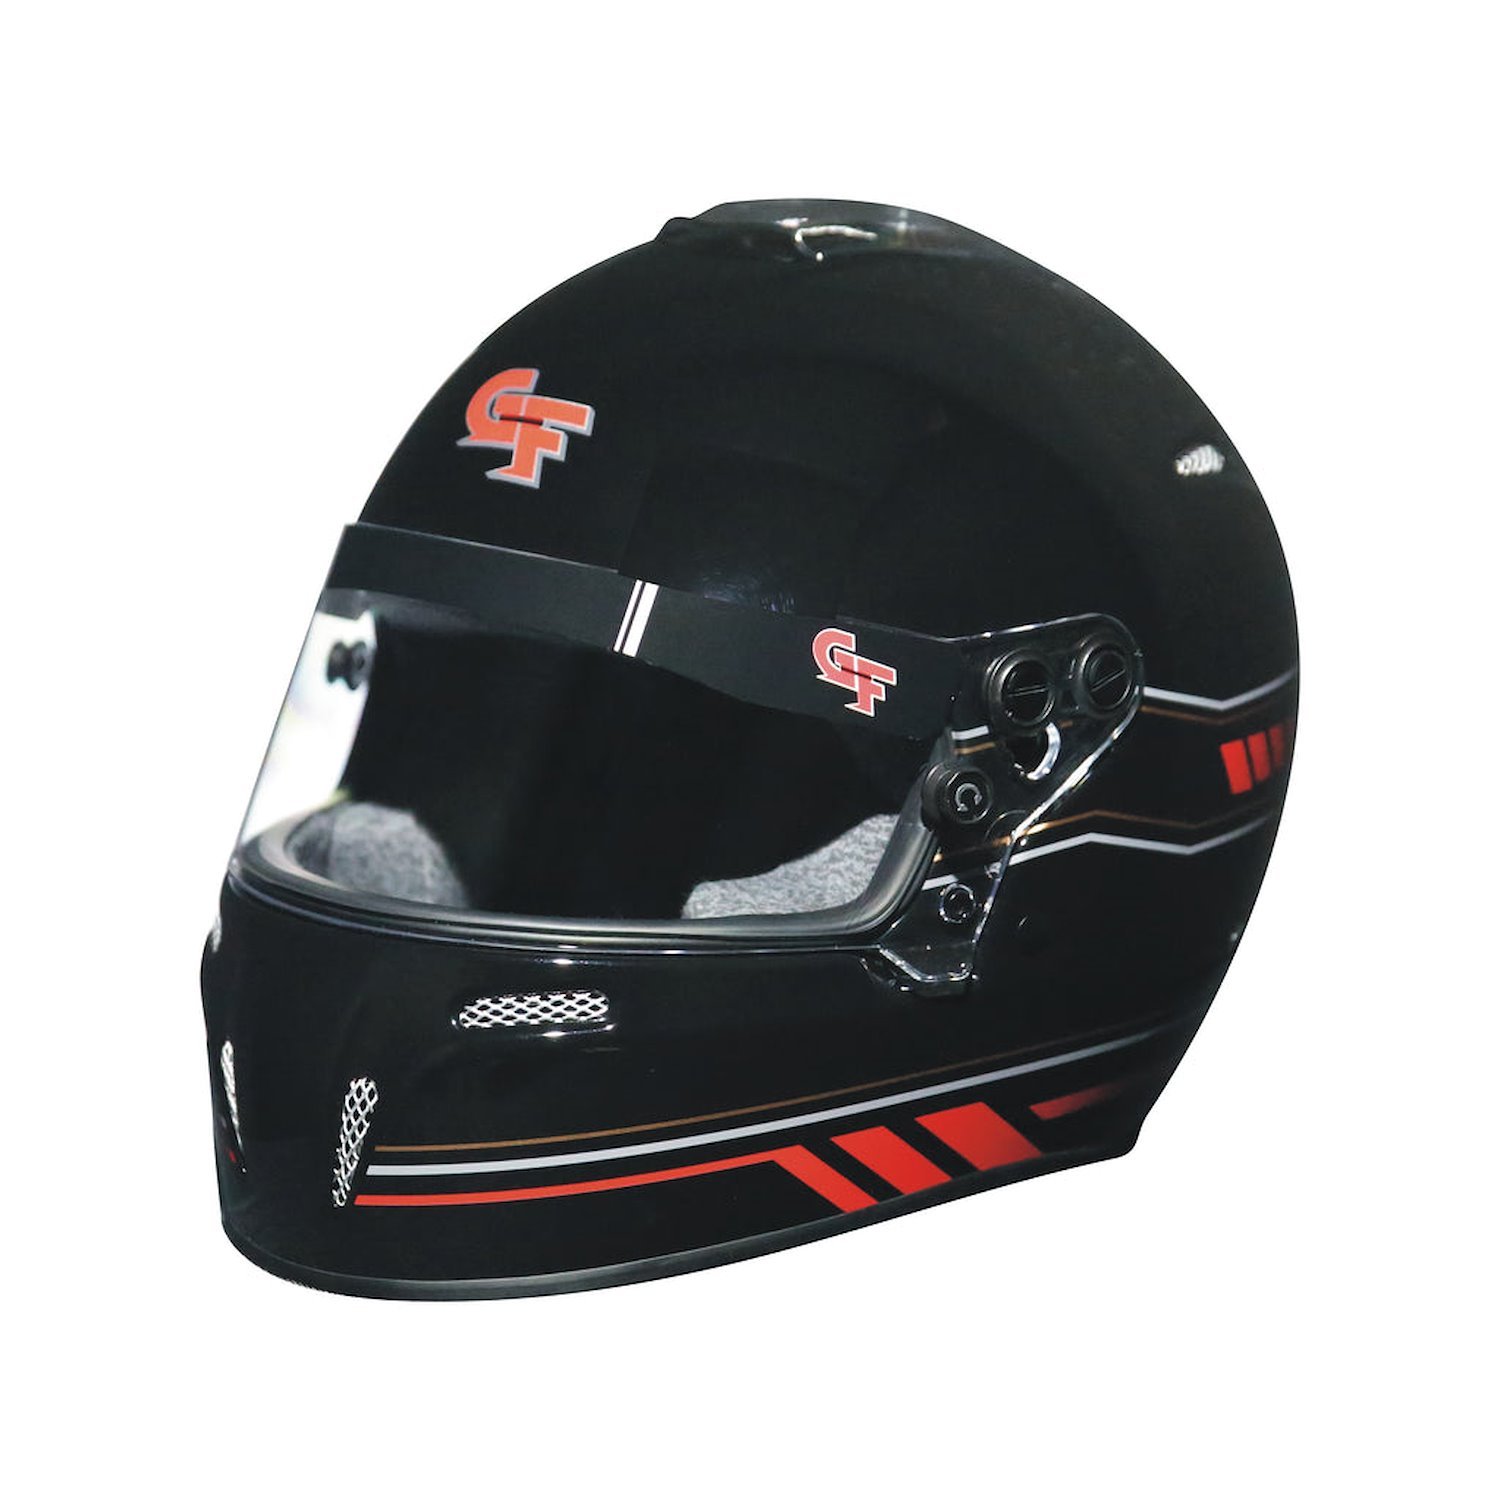 14102MEDB1 Helmet, Nighthawk Graphics SA2020, Medium, Black/Red